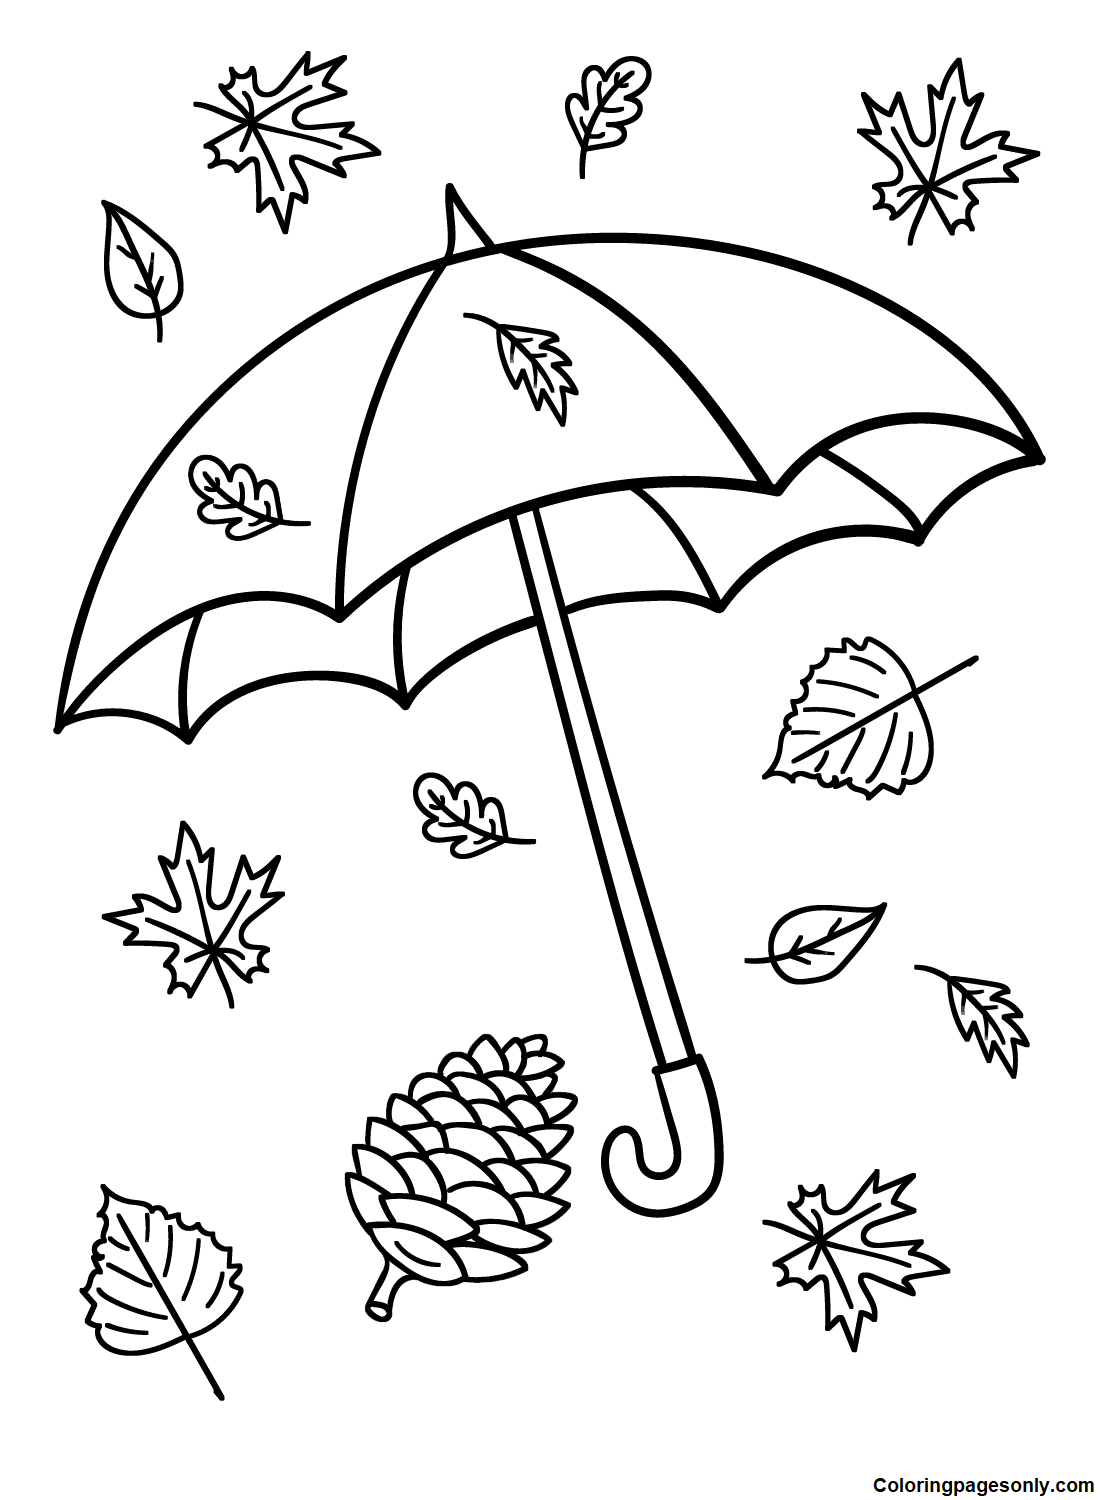 Paraguas y hojas de paraguas.